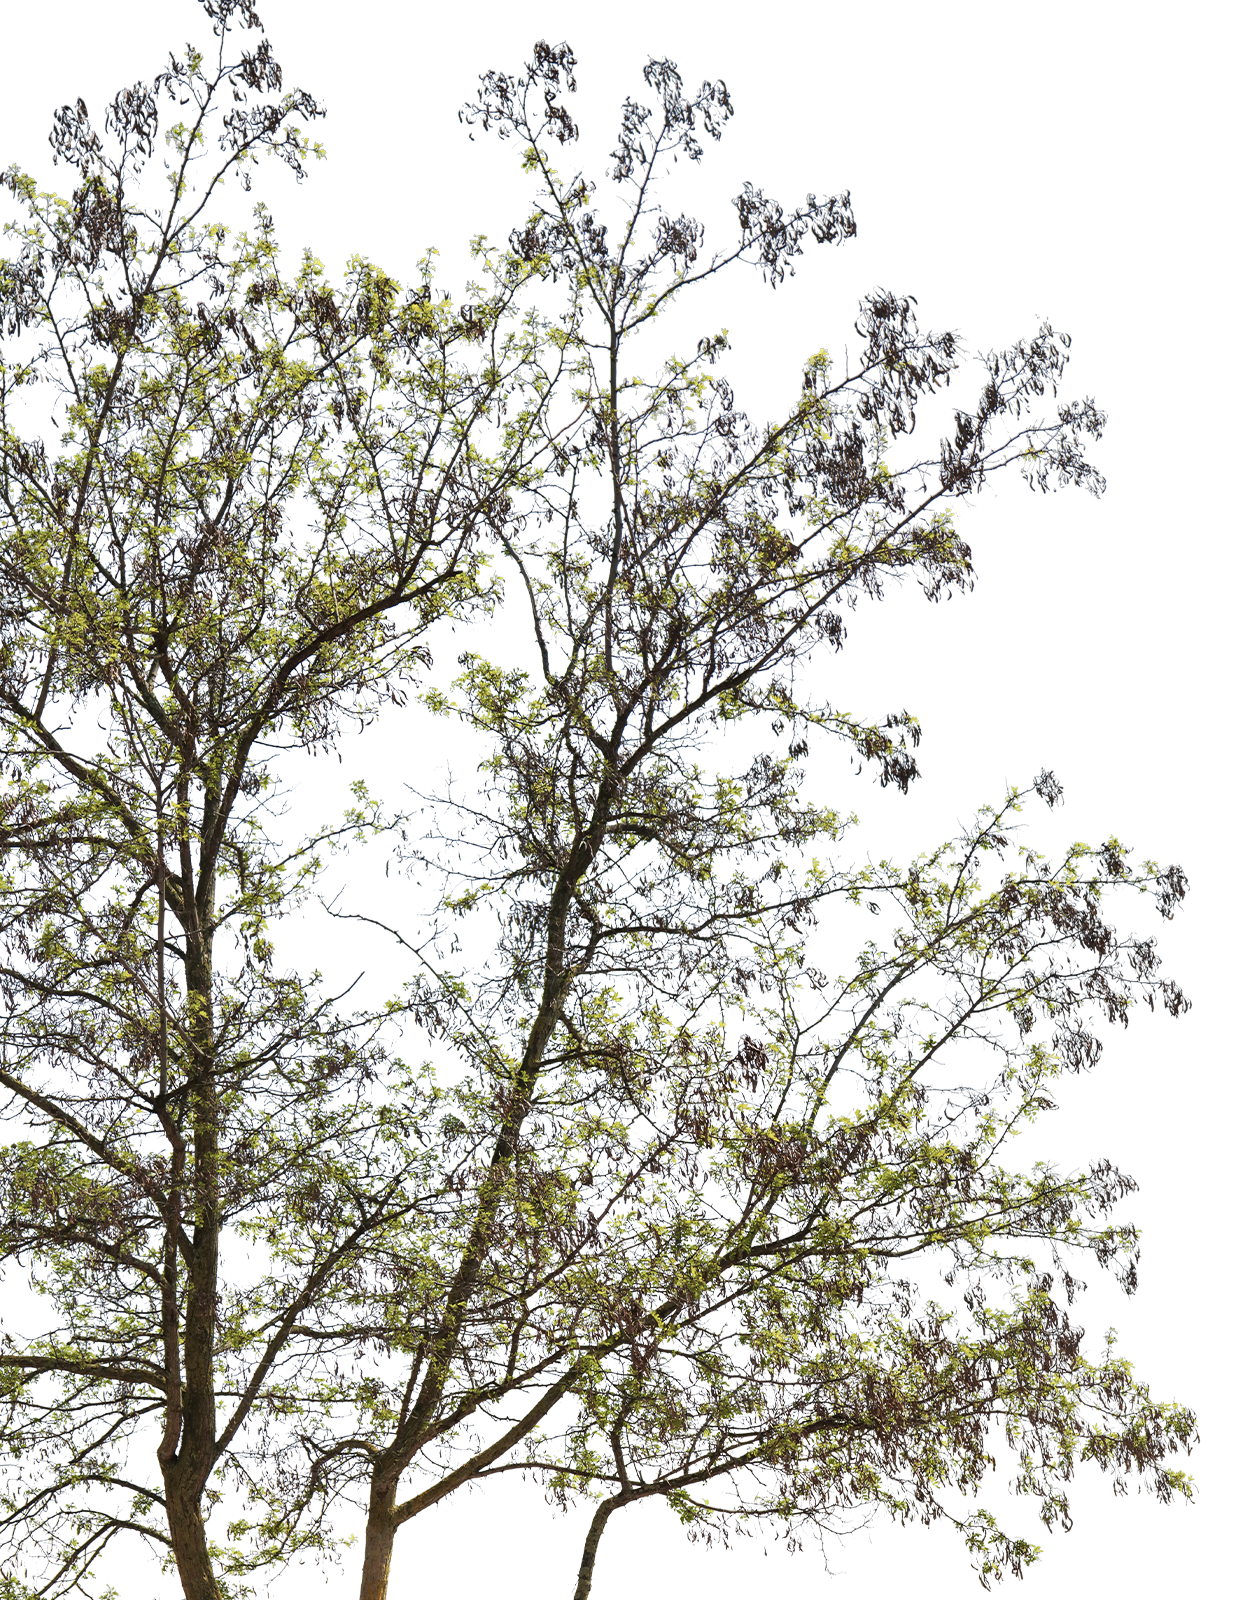 Robinia pseudoacacia m01 - cutout trees